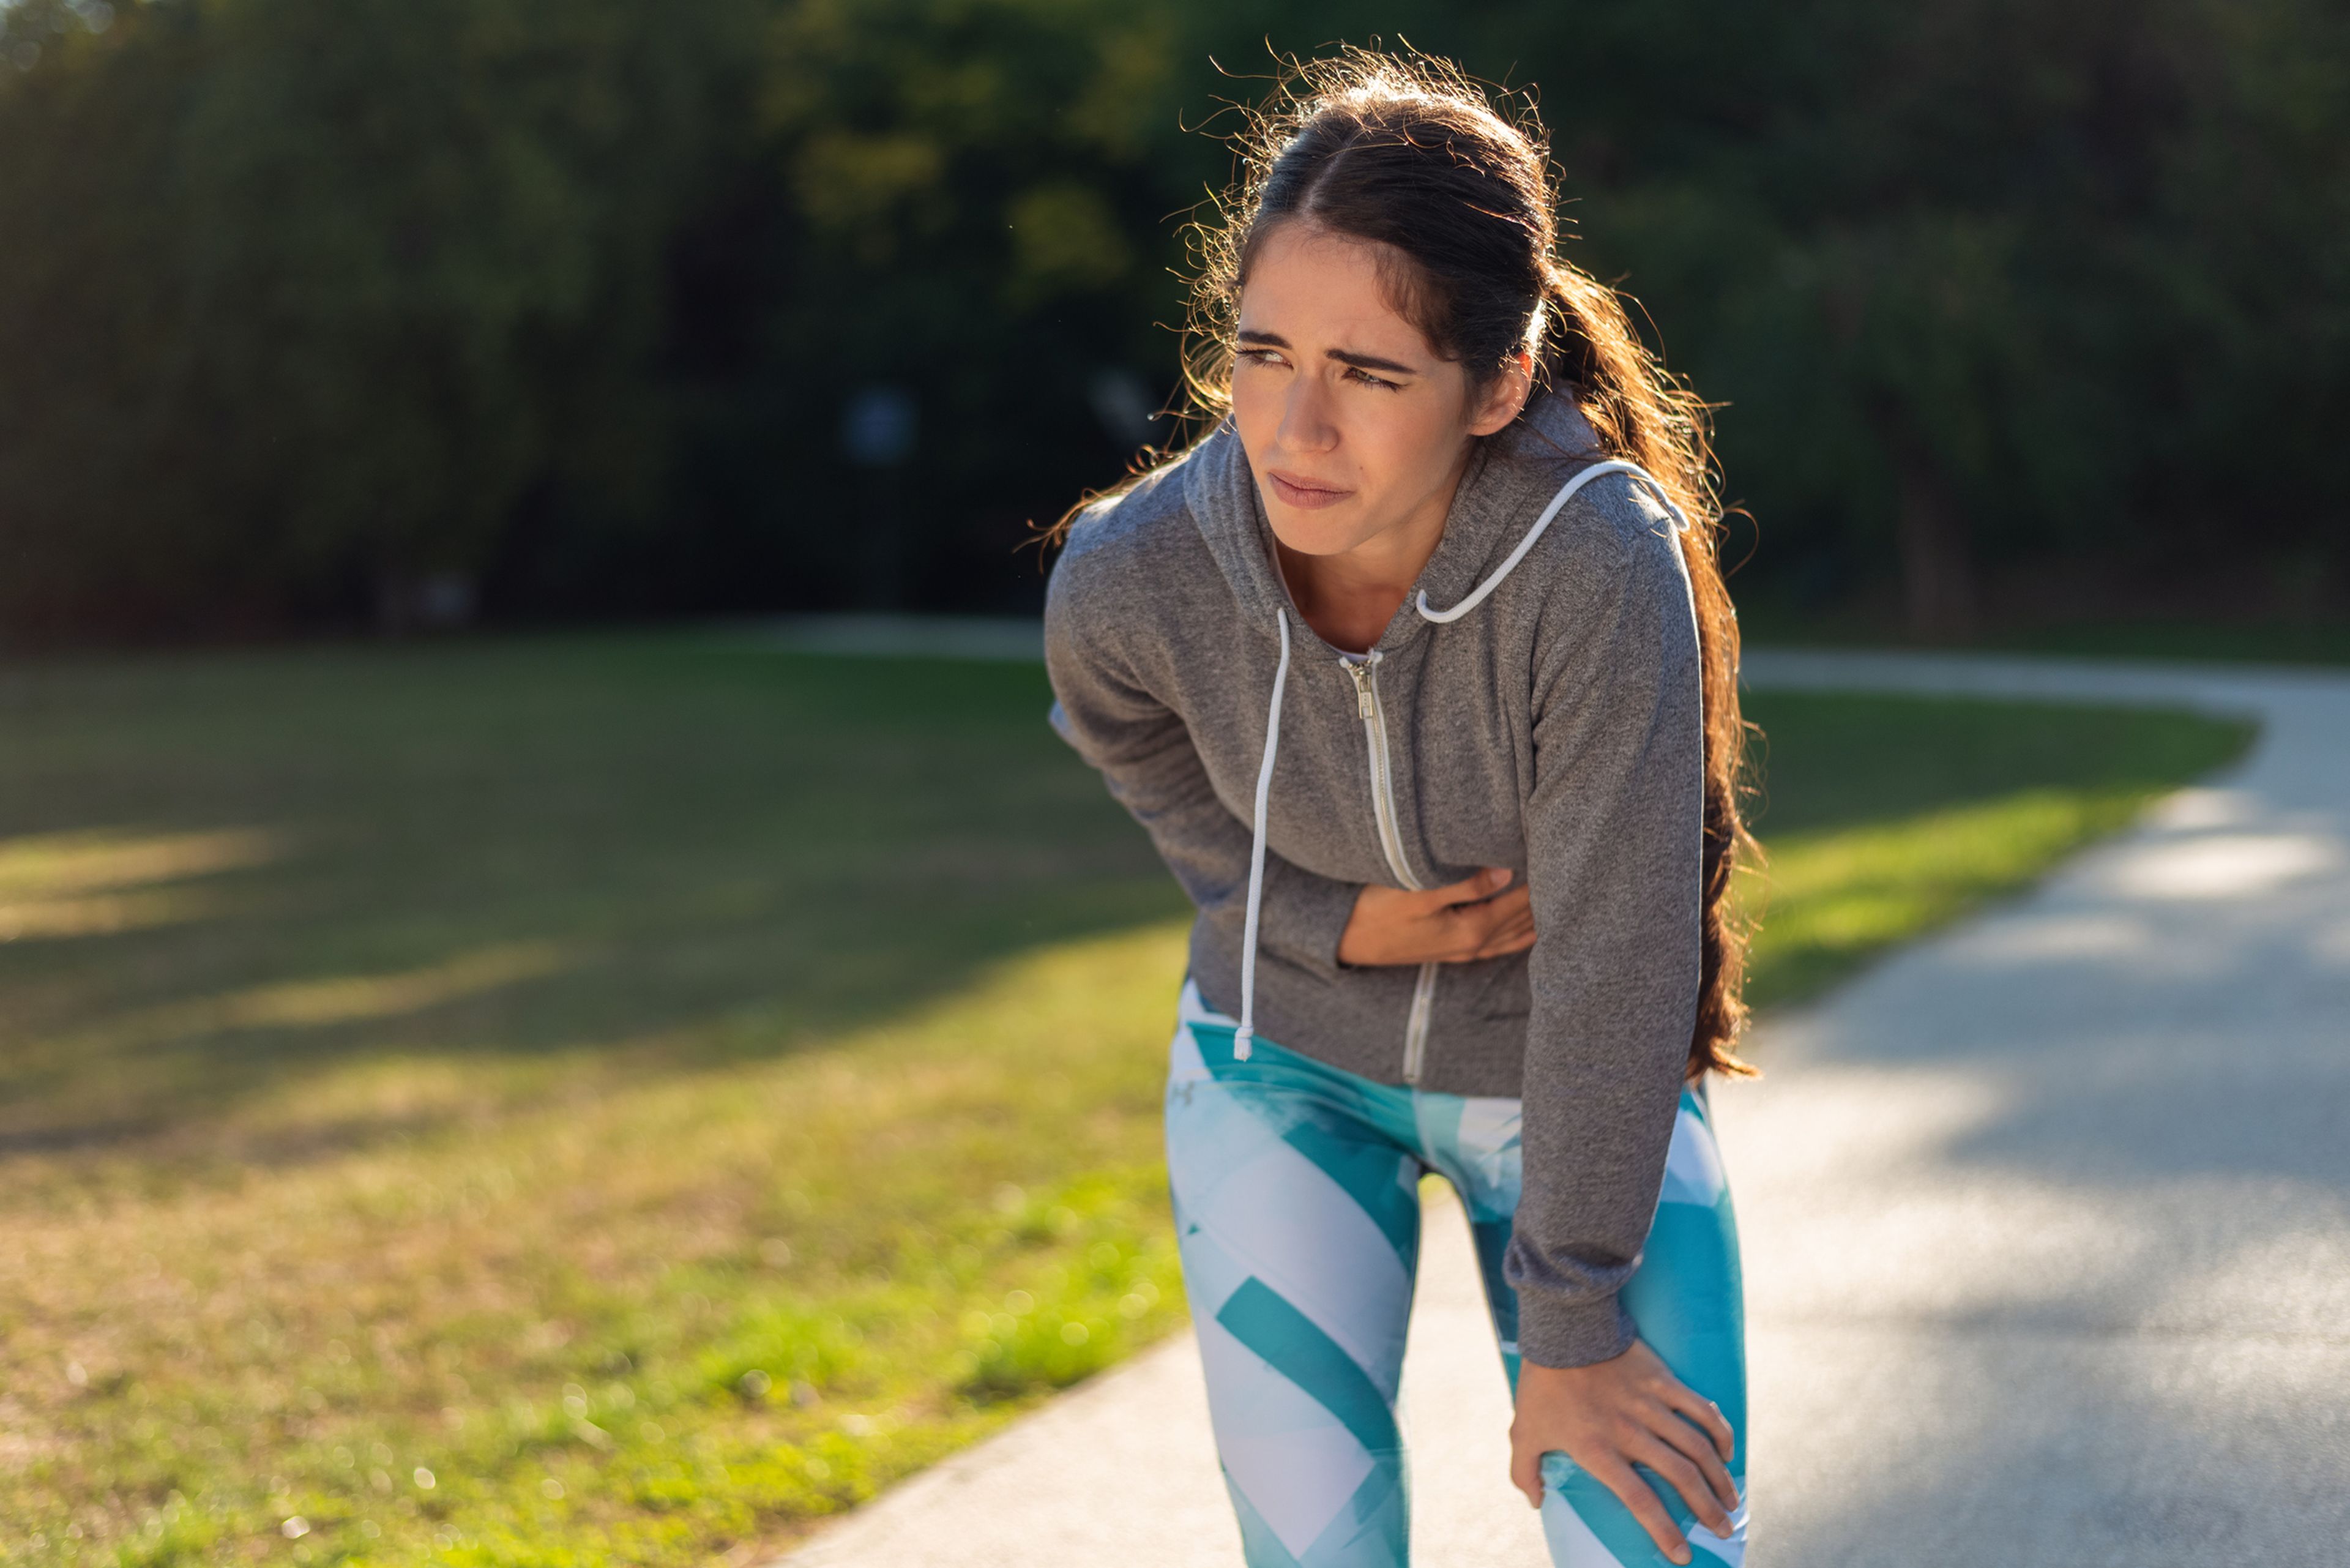 ¿Ya has sufrido de flato al correr?